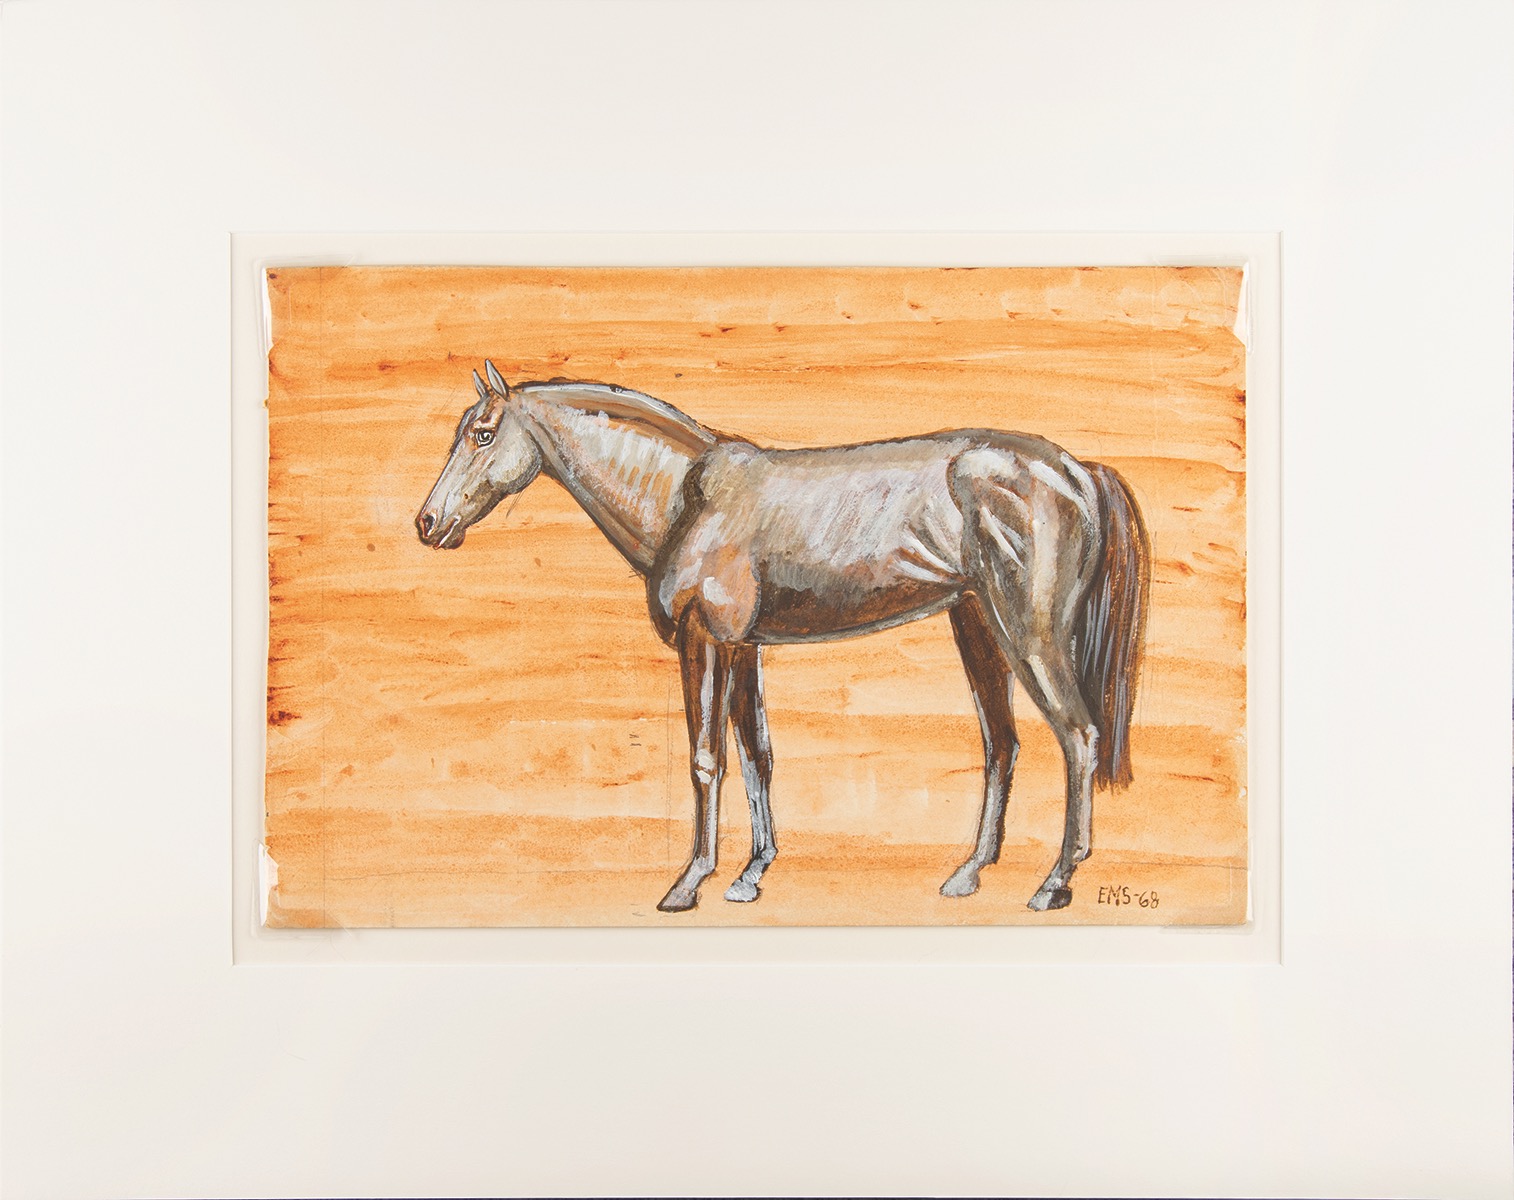 Lot #8037 Edie Sedgwick Original Horse Painting (1968)